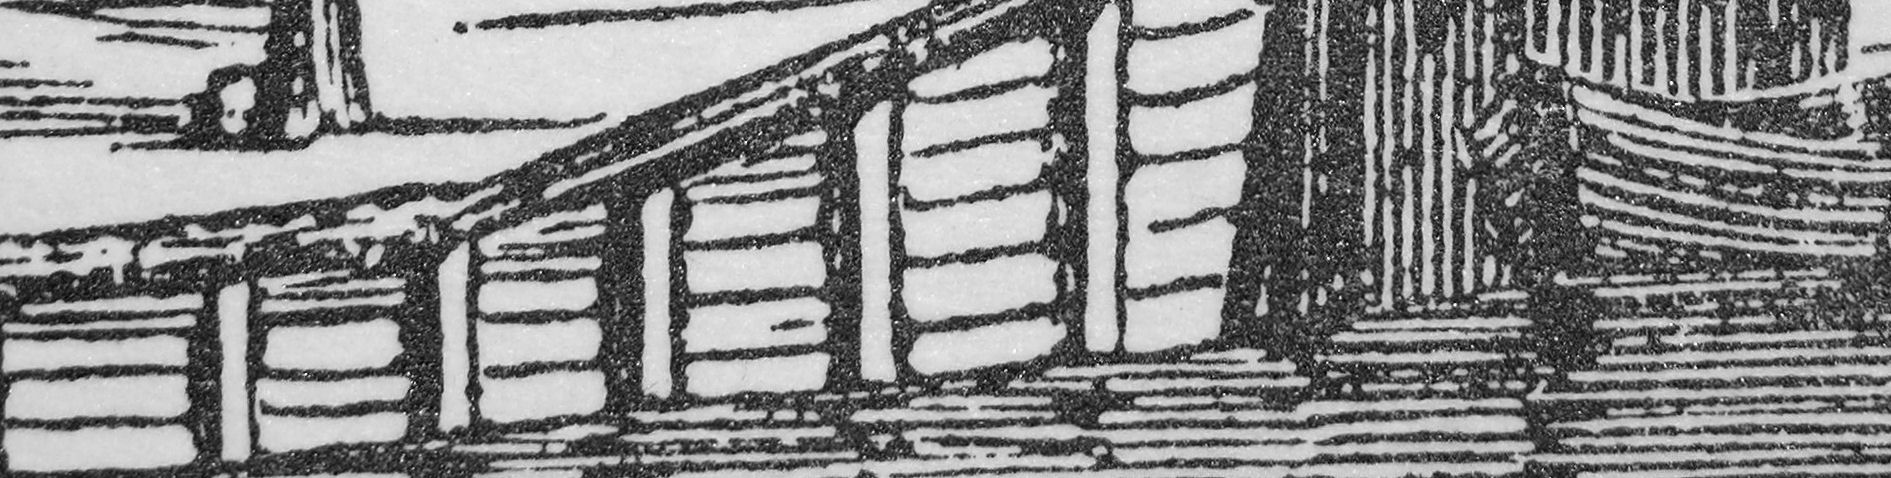 We kennen een oude afbeelding van de rentmeesterswoning, waarop de situatie uit de 19e eeuw is weergegeven (linksboven).